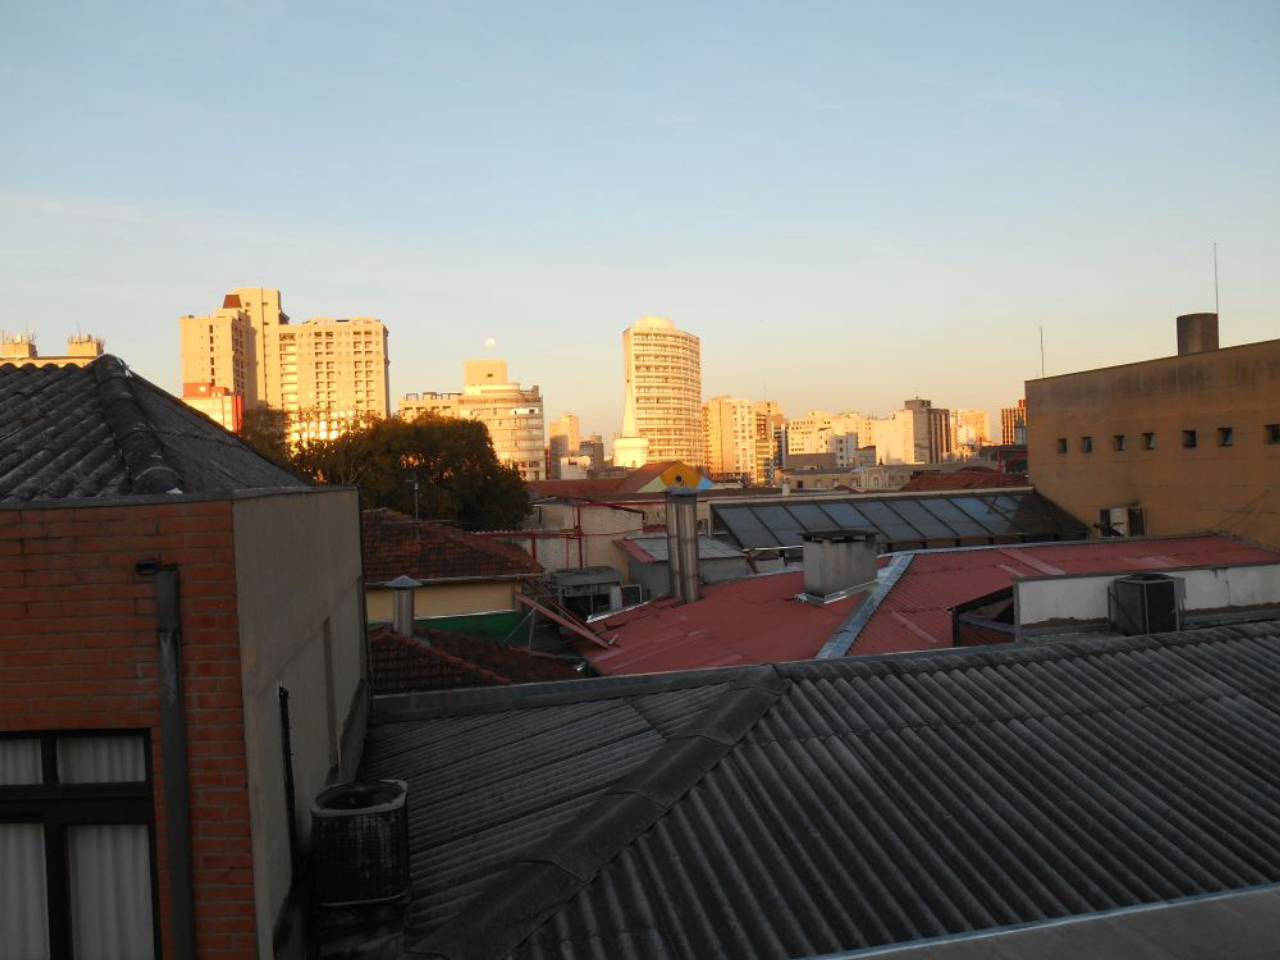 Vista do São Francisco, em Curitiba. Foto: Marialba Gaspar Imaguire/Acervo